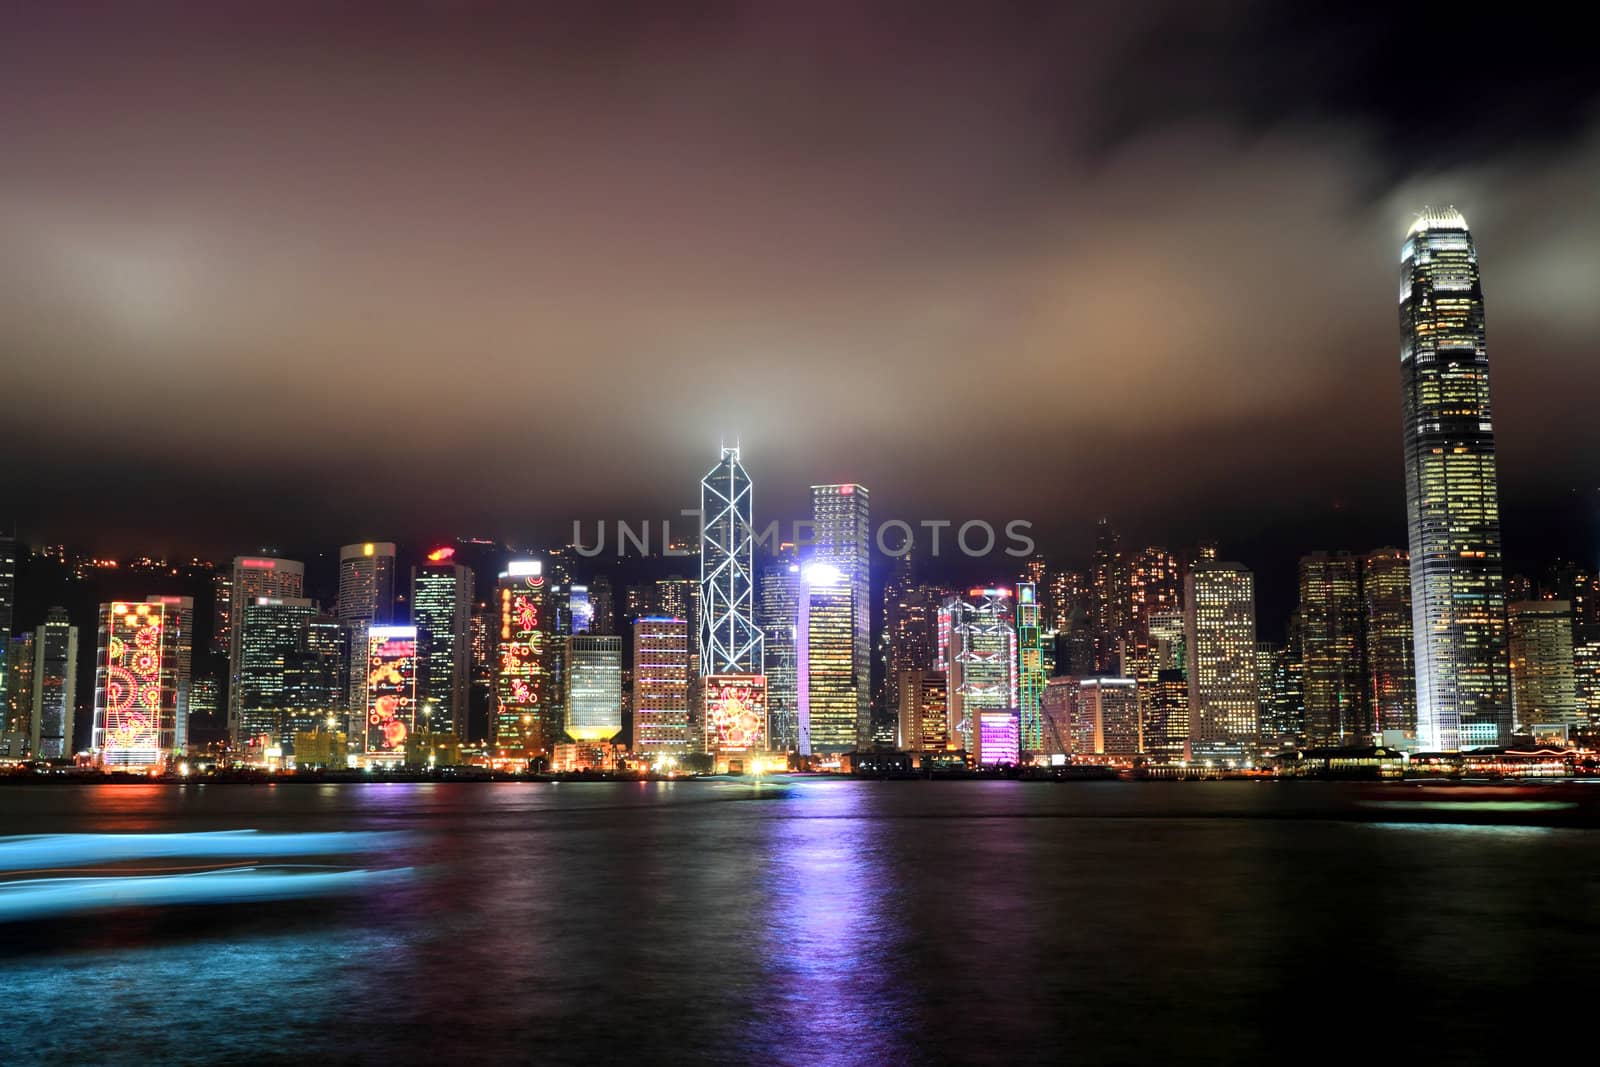 Hong Kong, city at night by leungchopan